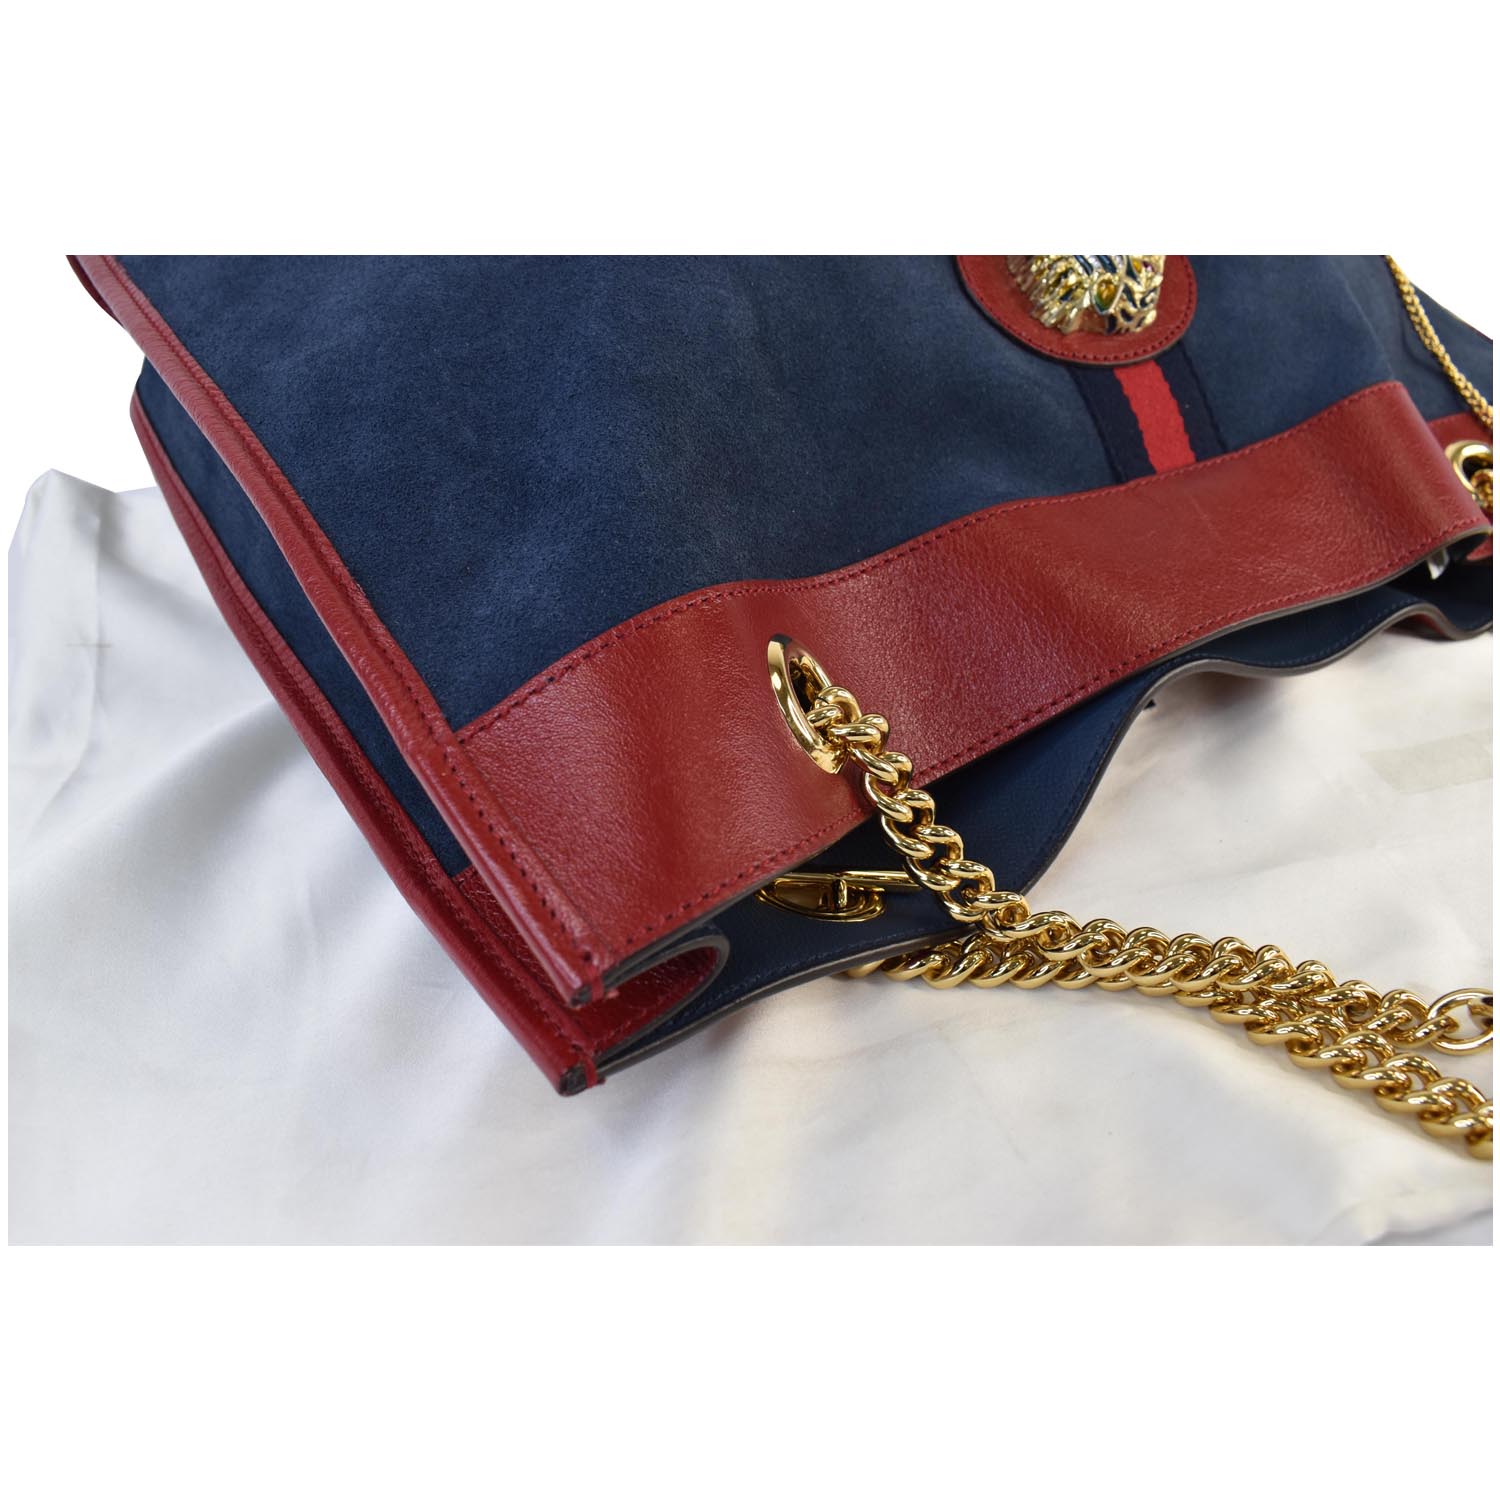 Gucci Rajah Suede Tote Bag Navy/Red